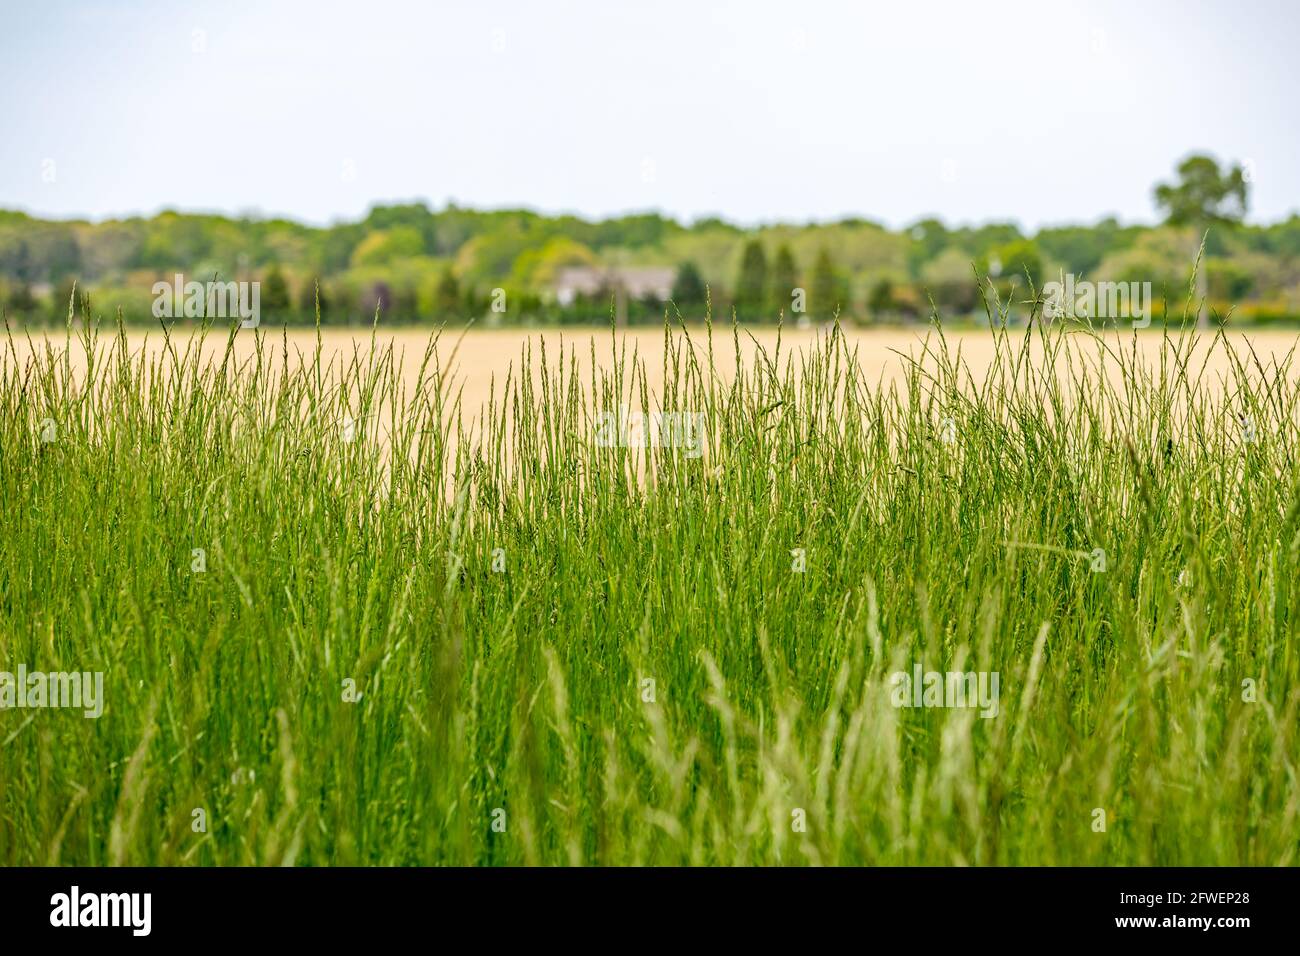 Hintergrund bestehend aus Gras, Feldern und fernen Bäumen Stockfoto